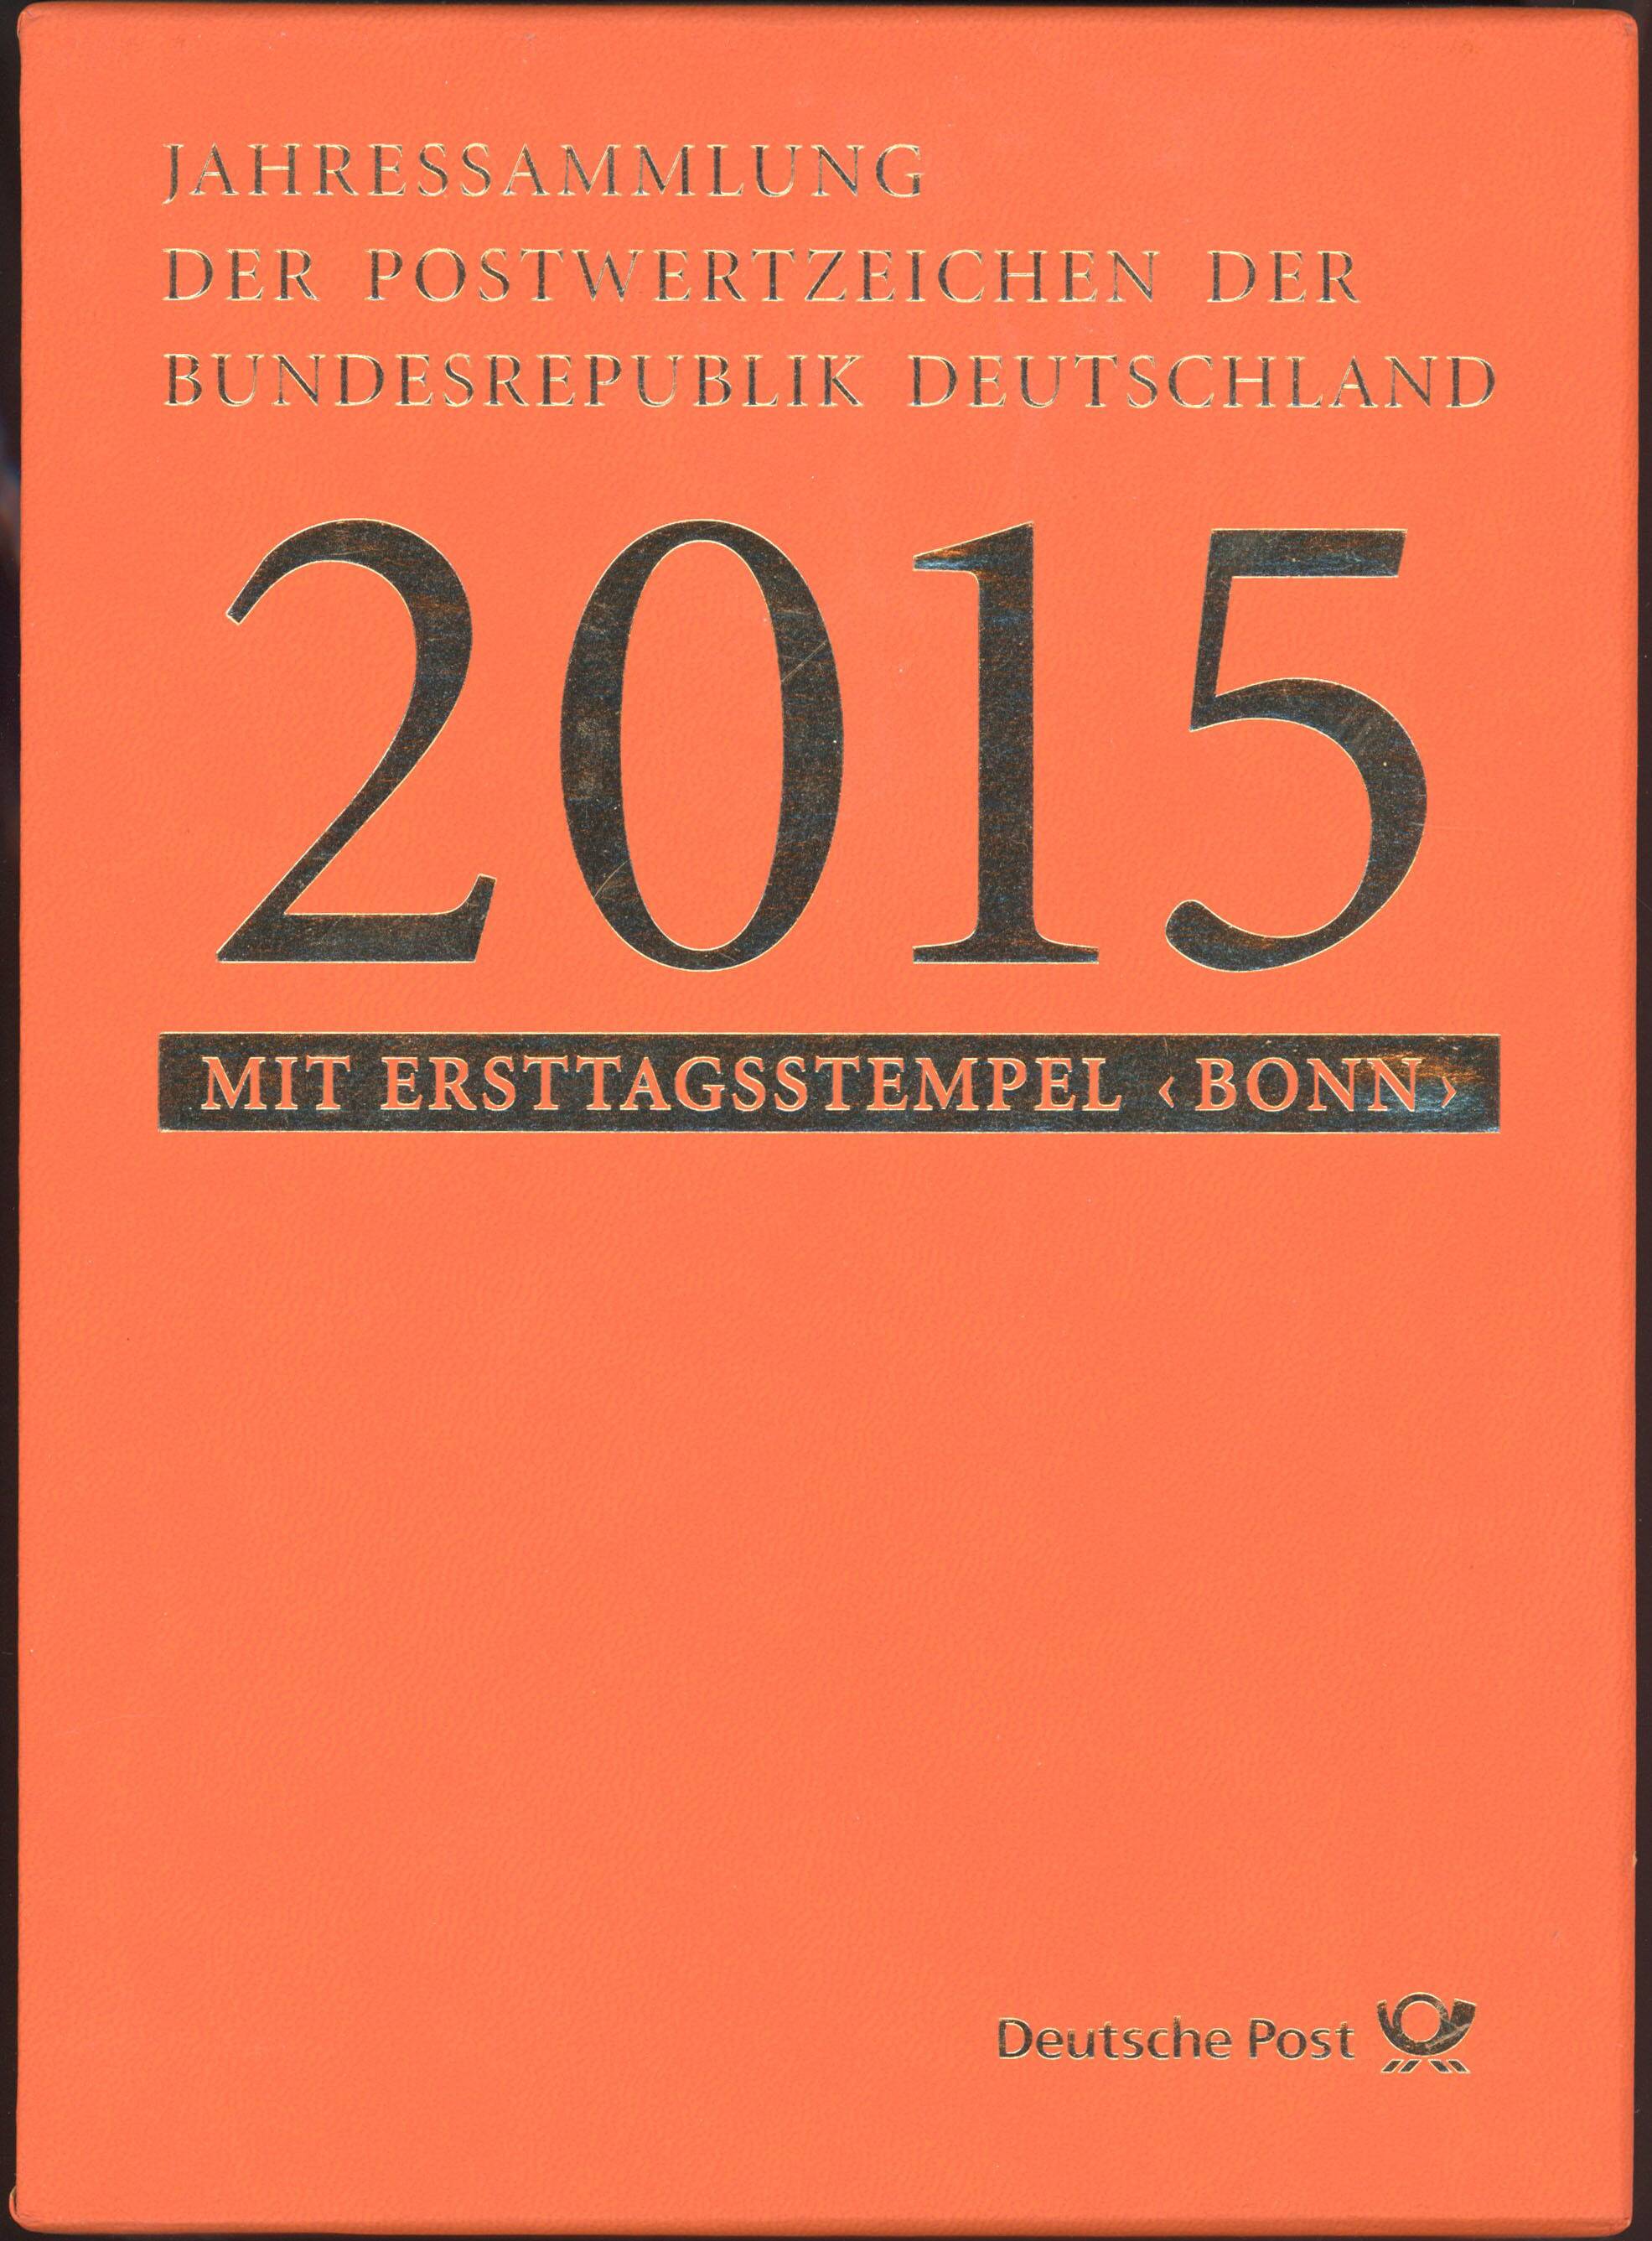 BRD 2015 Jahressammlung der Deutschen Post AG